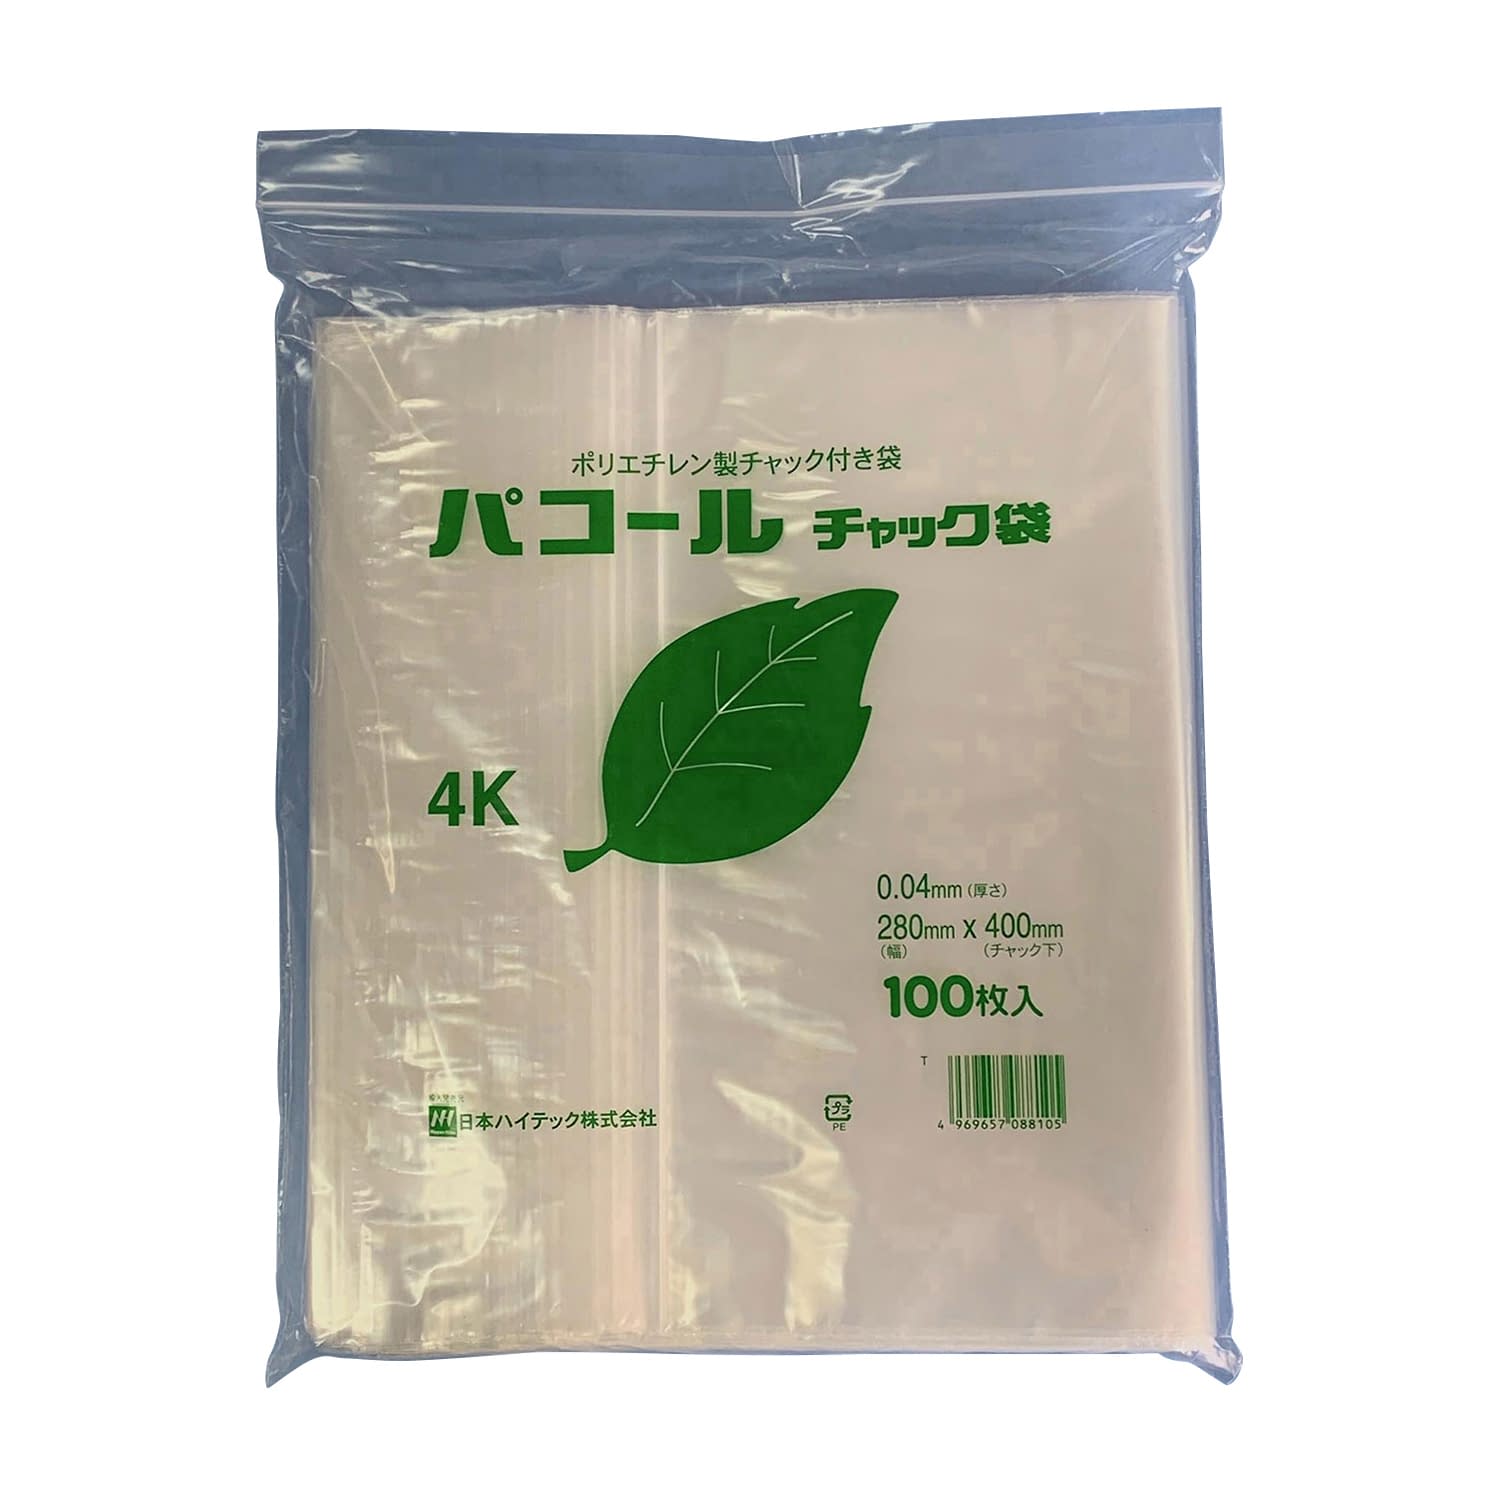 (24-3926-10)パコールチャック袋 4K(100ﾏｲX15ﾌｸﾛ) ﾊﾟｺｰﾙﾁｬｯｸﾌﾞｸﾛ【1箱単位】【2019年カタログ商品】